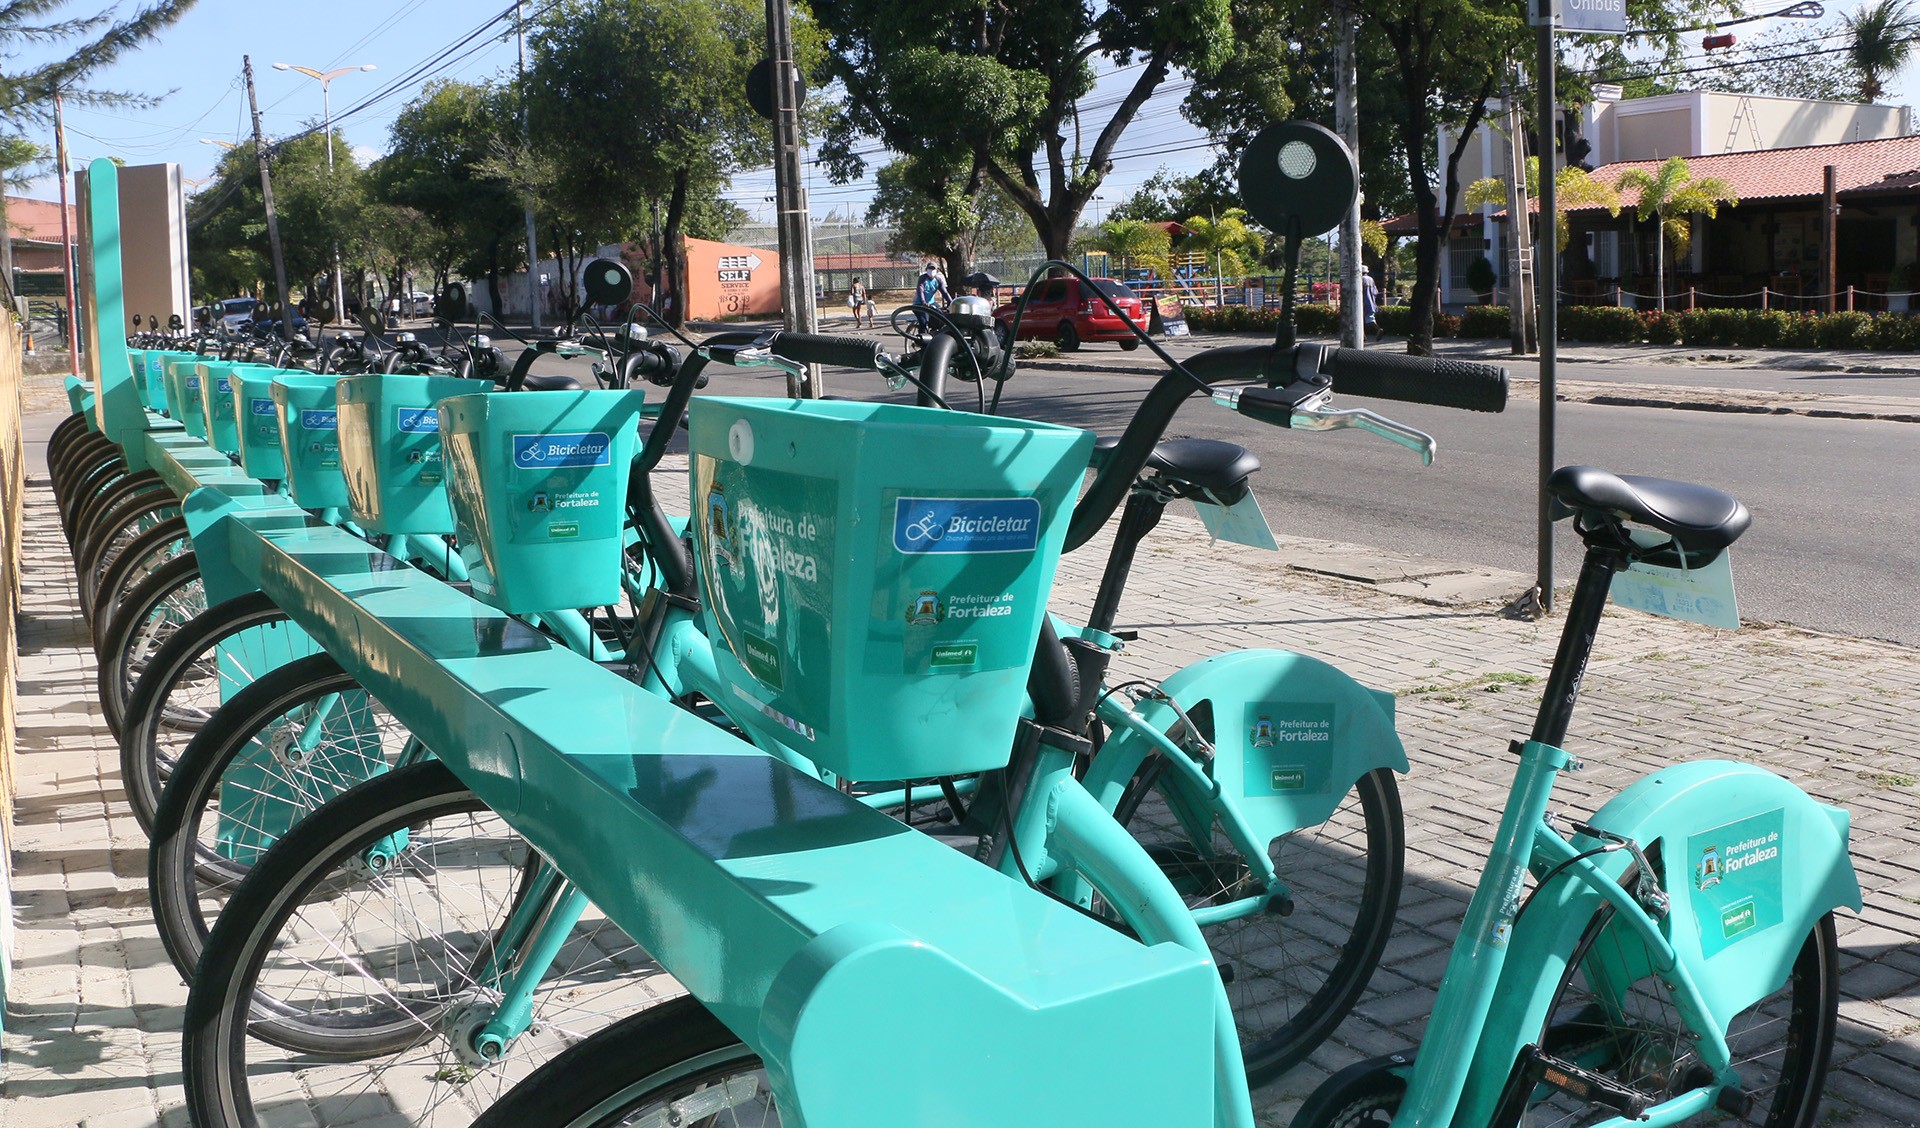 Fóruns Territoriais de Fortaleza - Fórun Territorial Aeroporto, Parreão e Vila União - Prefeitura de Fortaleza inicia operação de oito novas estações do Bicicletar nas Regionais VI e IV